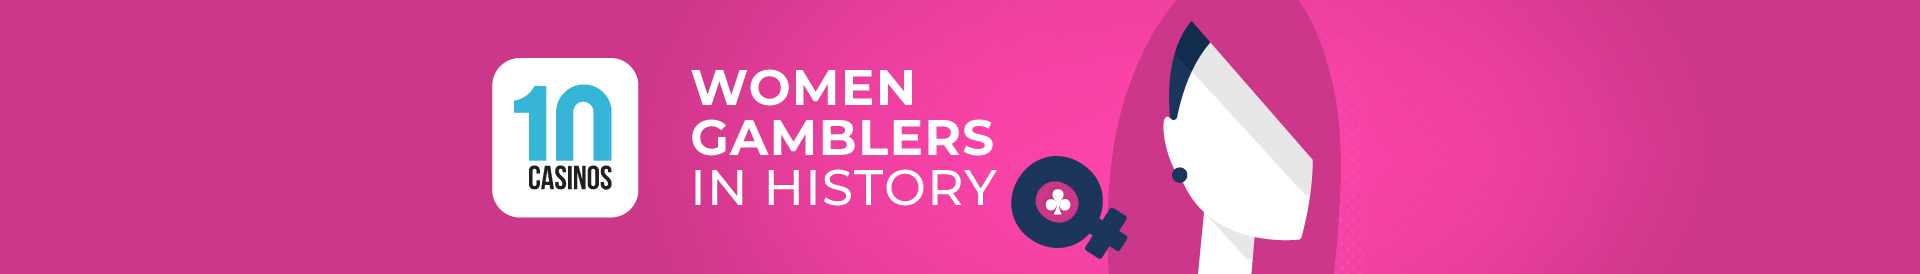 top 10 women gamblers in history desktop